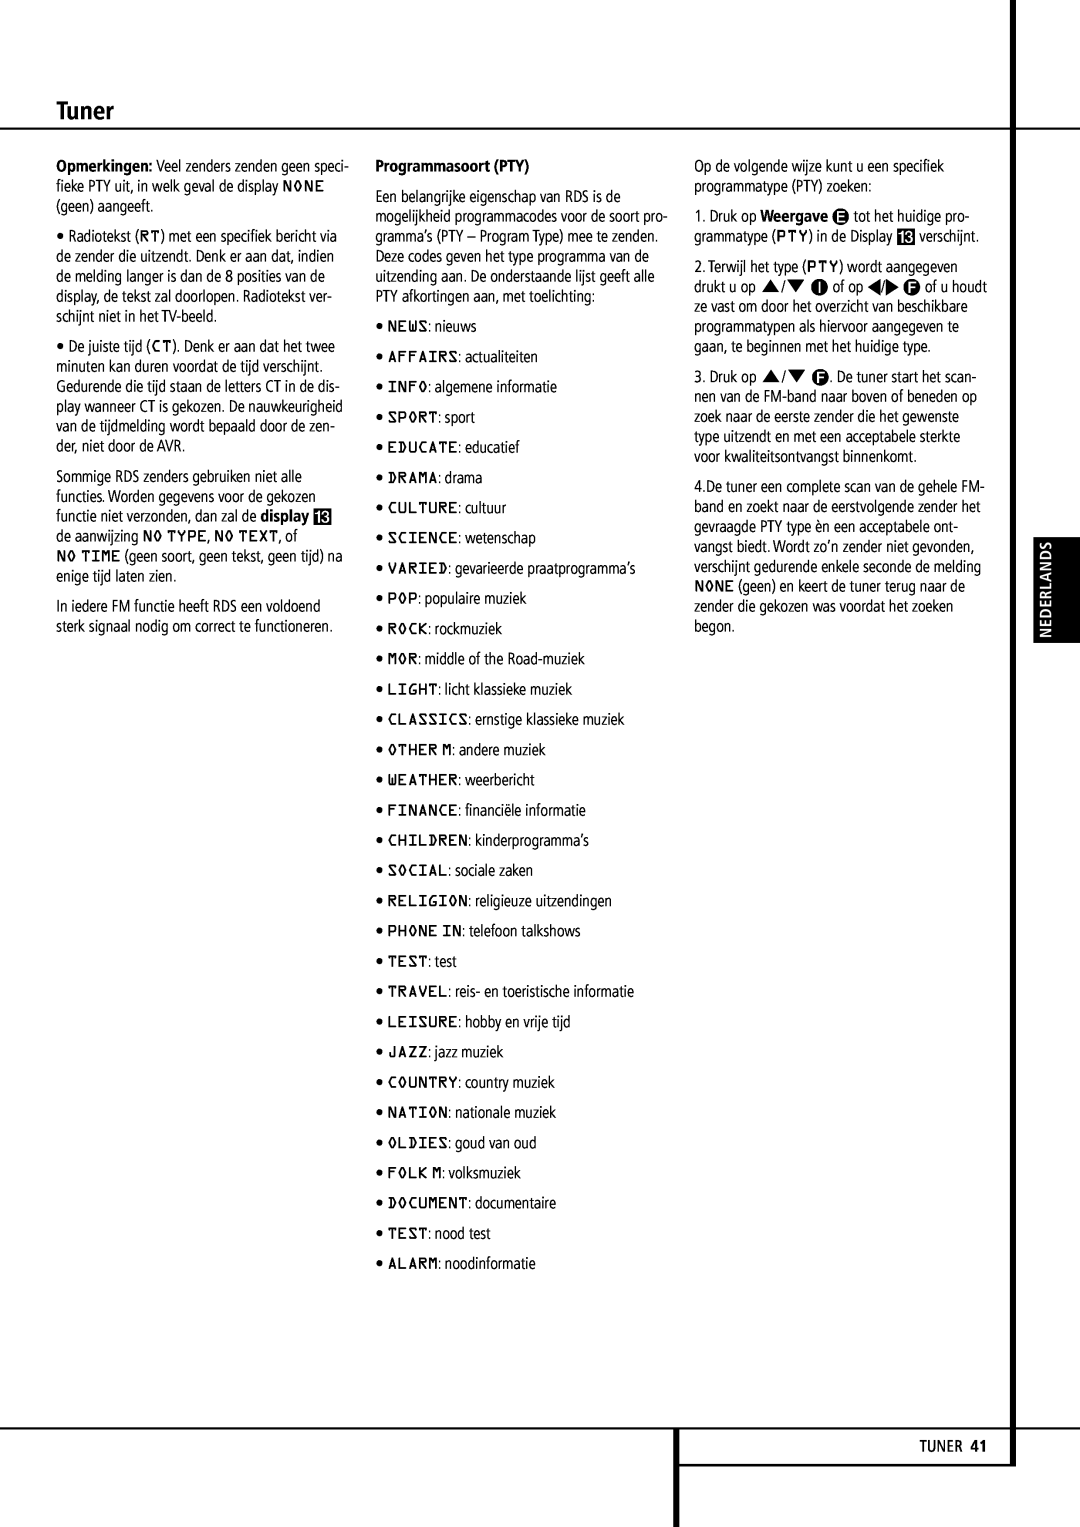 Harman-Kardon 355, 255 manual Tuner, Programmasoort PTY, Nederlands 